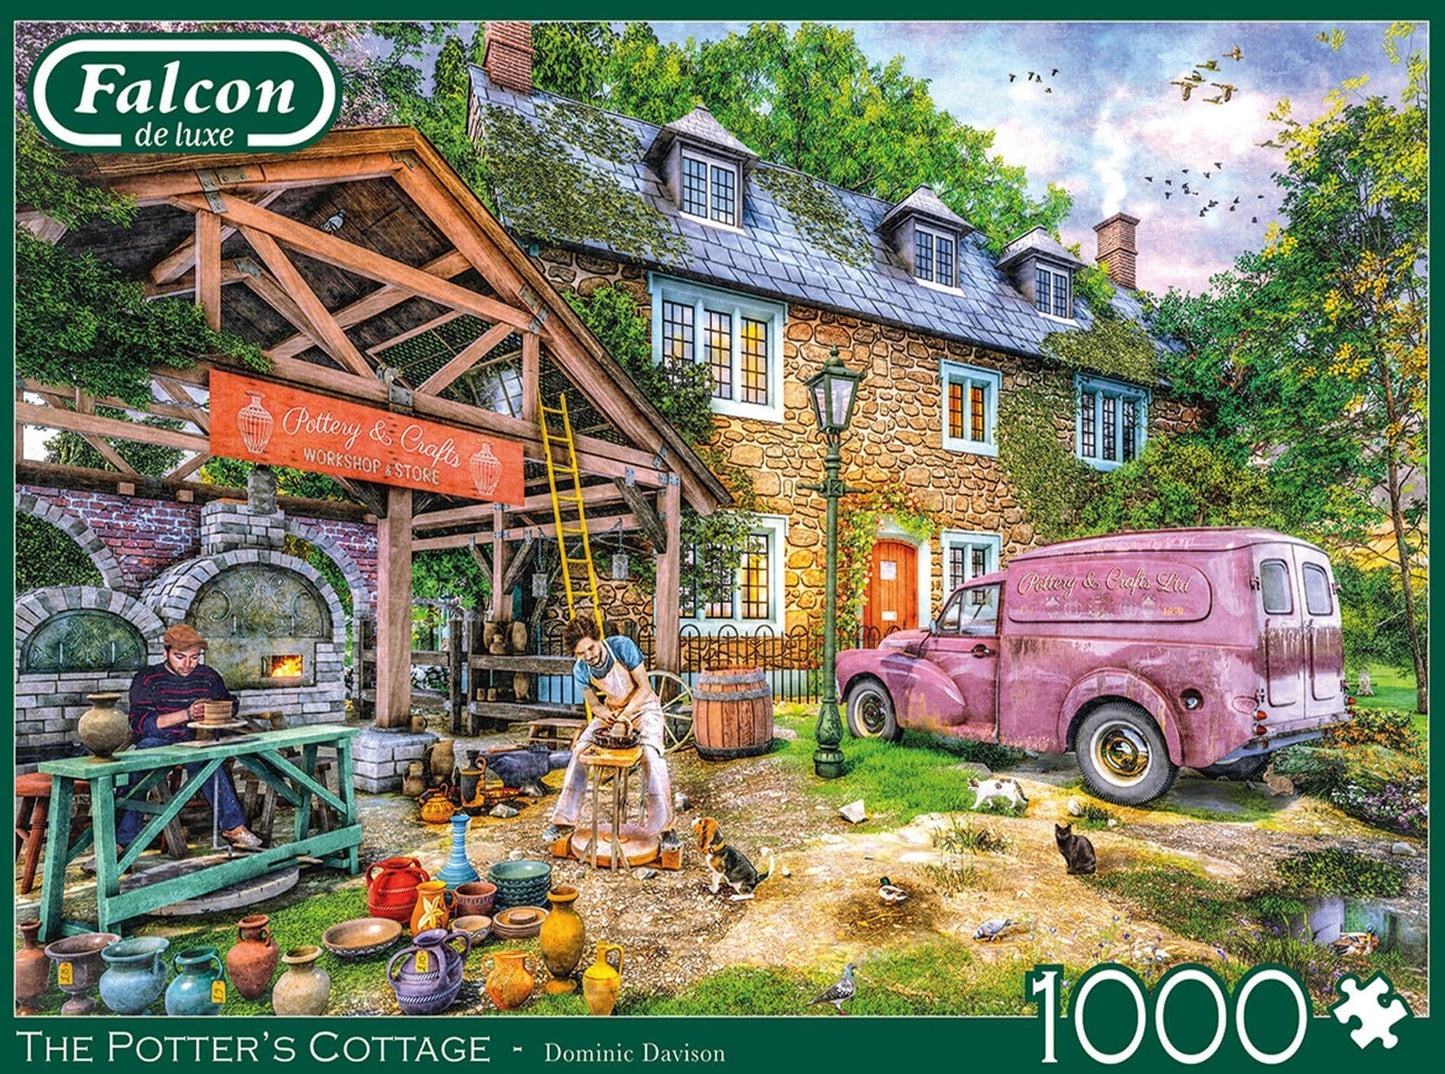 Falcon de luxe - The Potters Cottage - 1000 Piece Jigsaw Puzzle